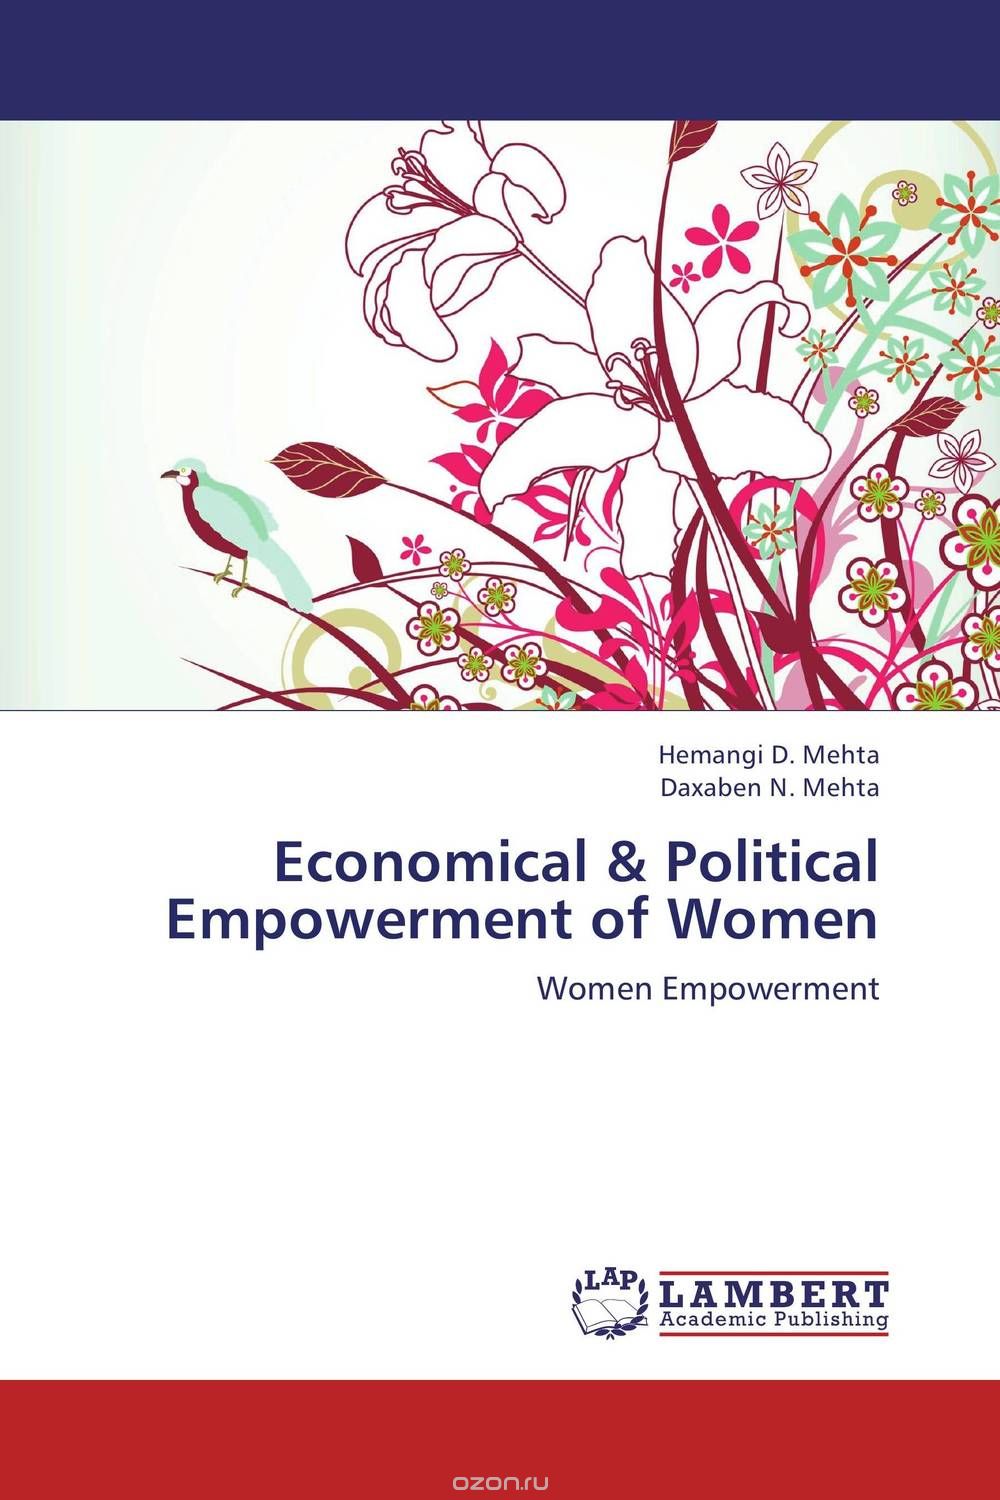 Скачать книгу "Economical & Political Empowerment of Women"